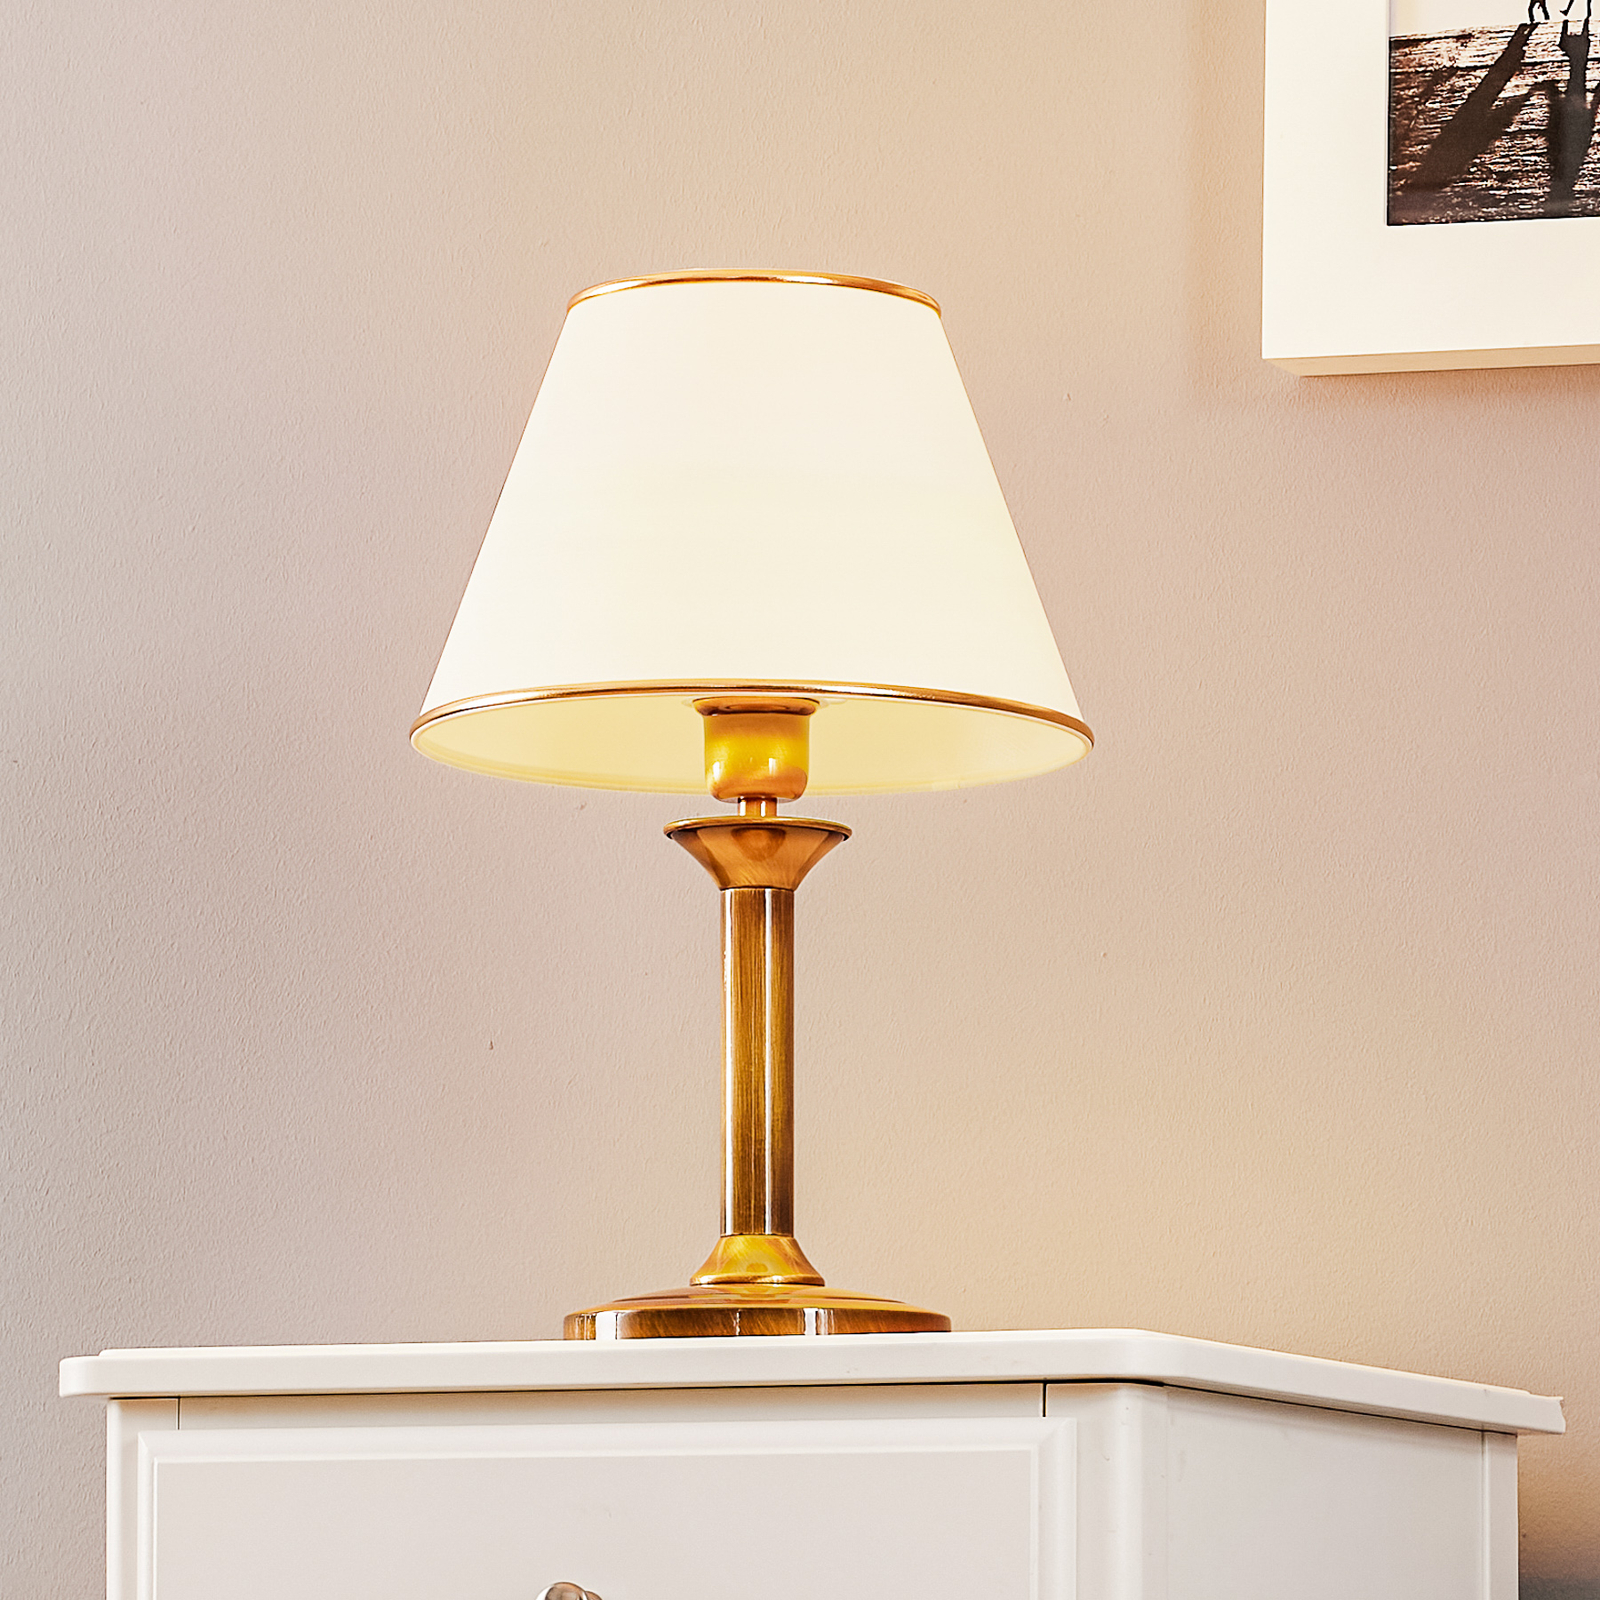 Lampa stołowa Birmingham patynowana Ø 27 cm